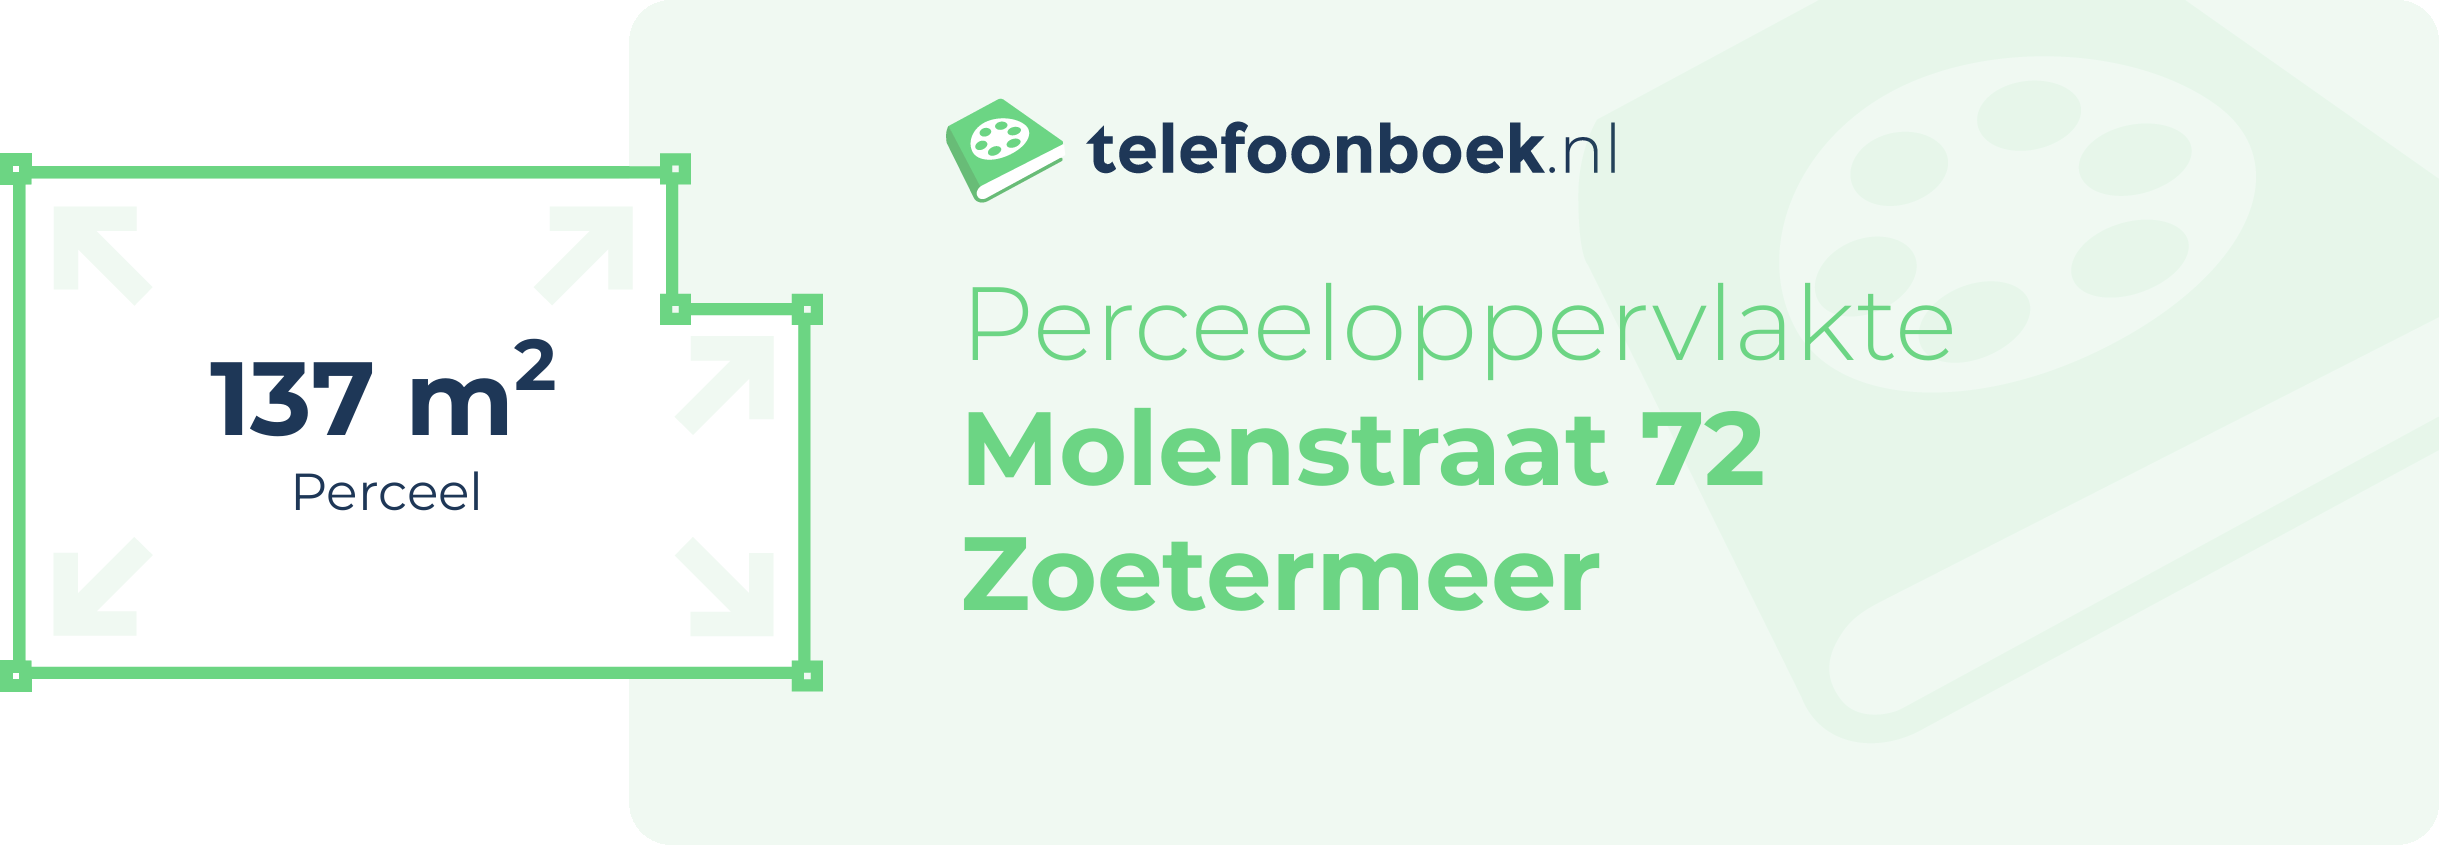 Perceeloppervlakte Molenstraat 72 Zoetermeer